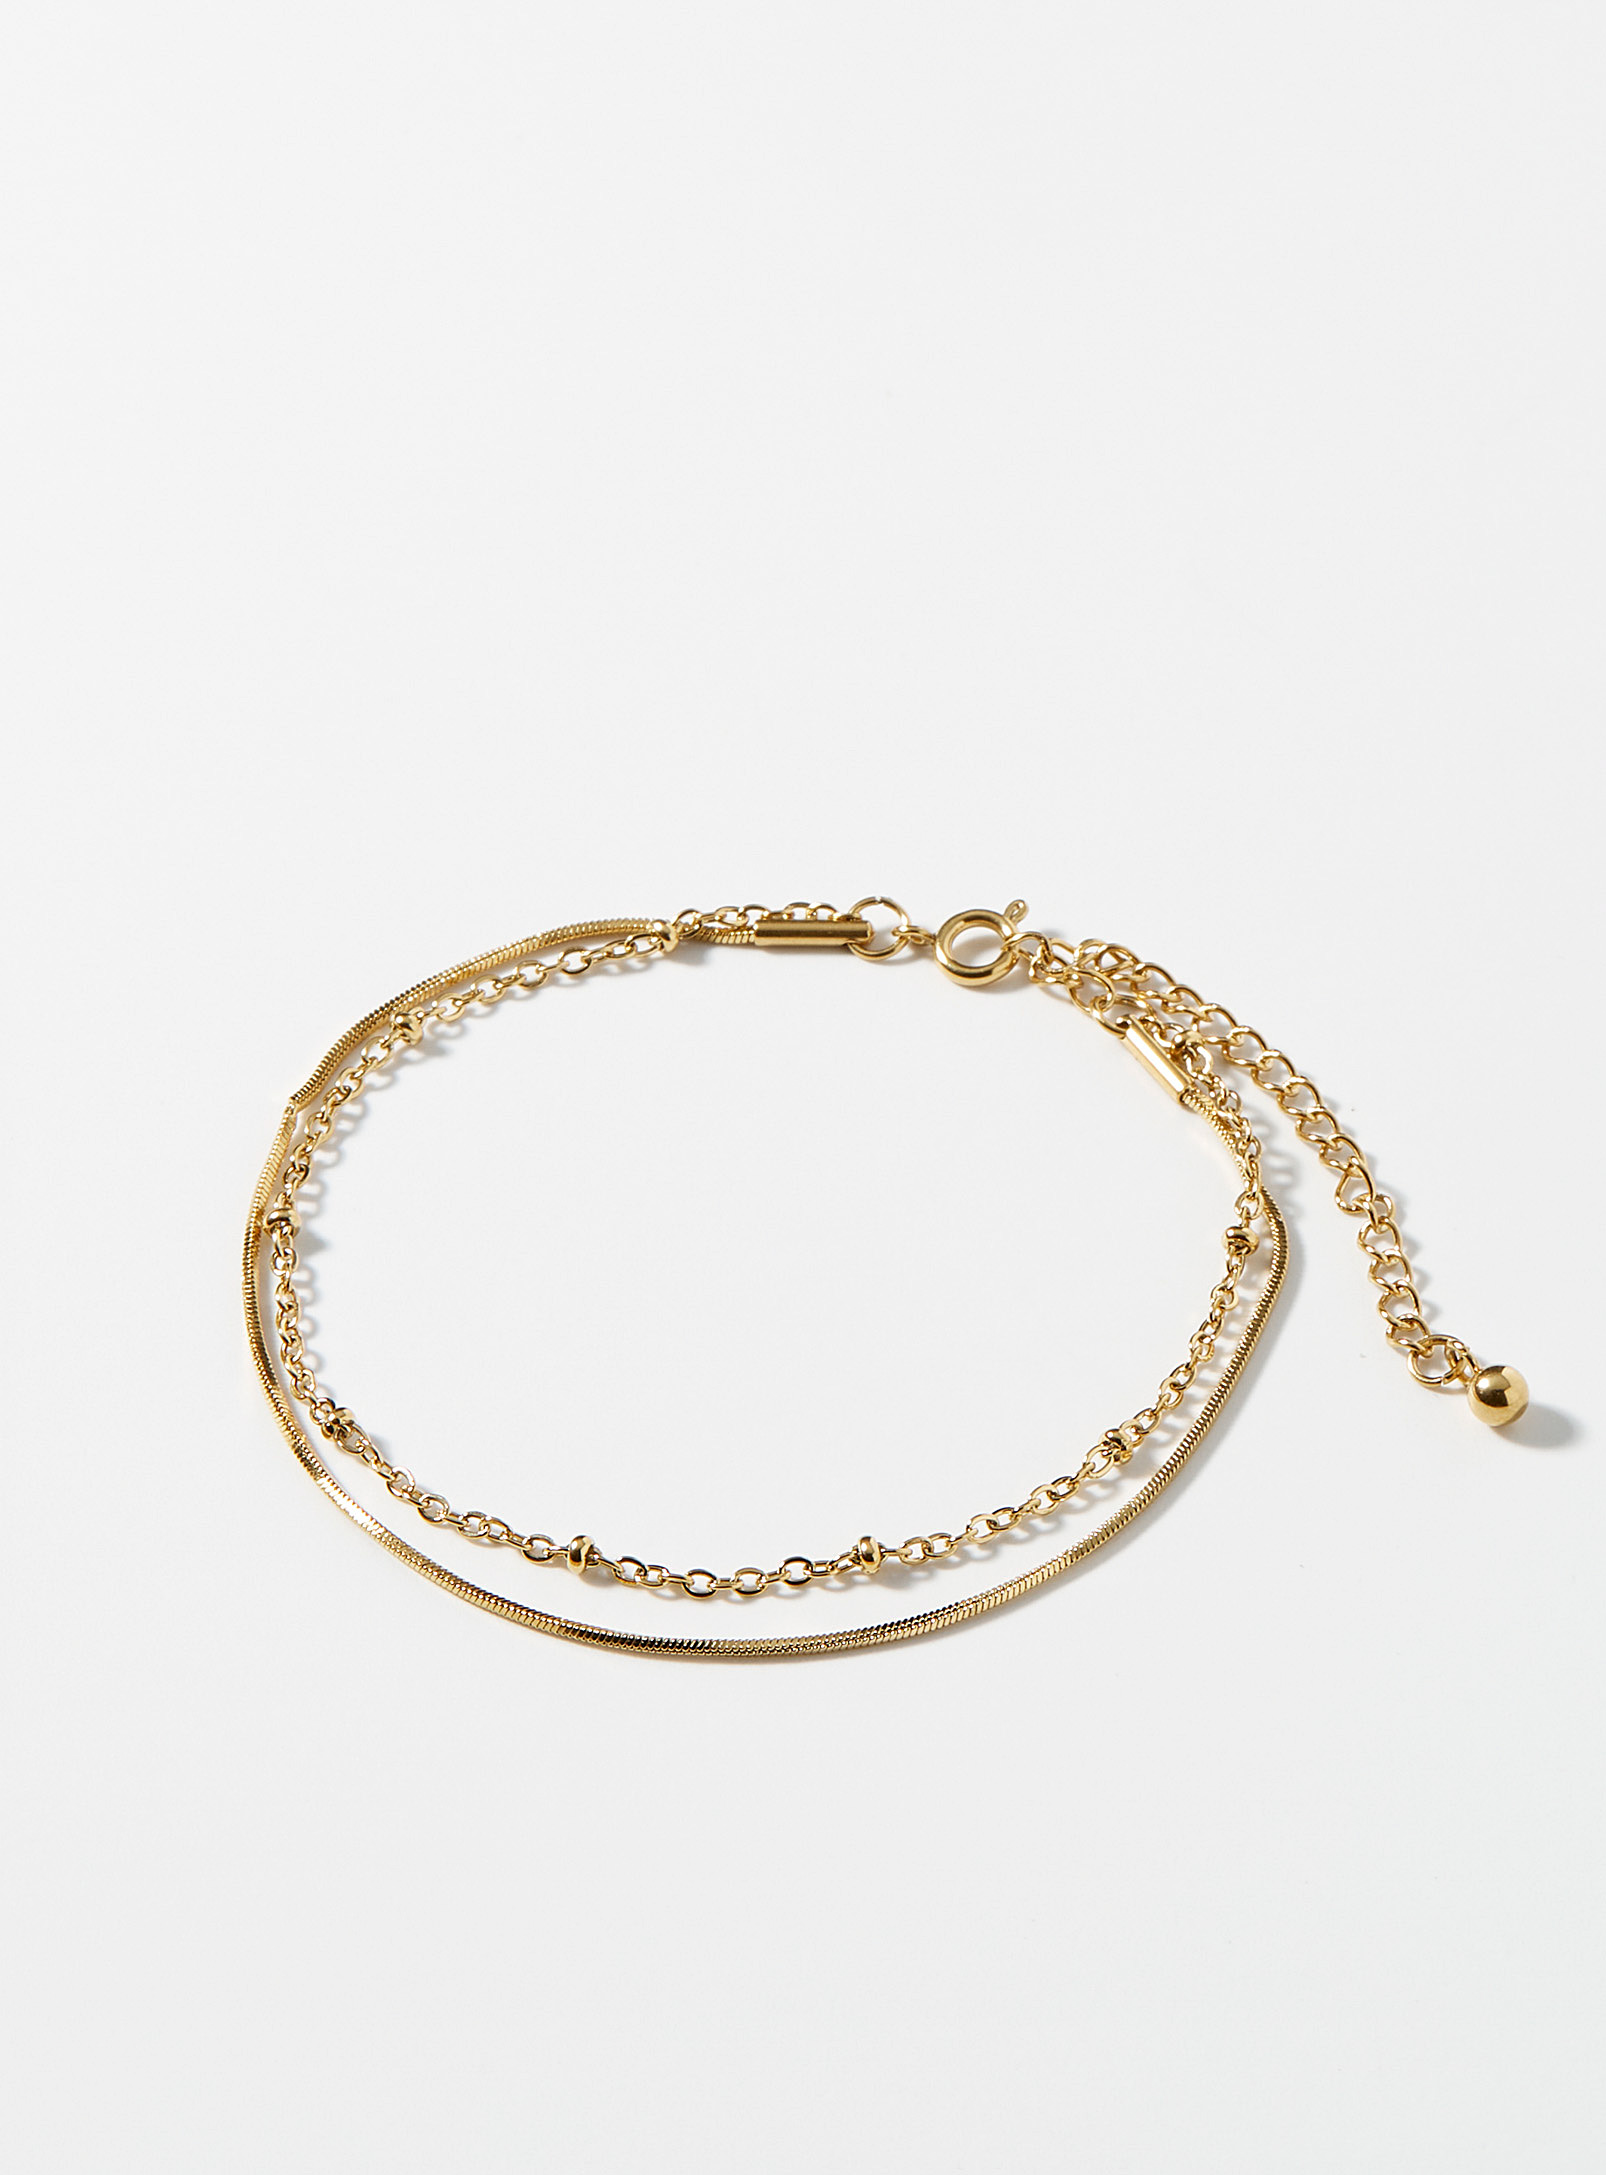 Simons - Women's Golden double-chain bracelet